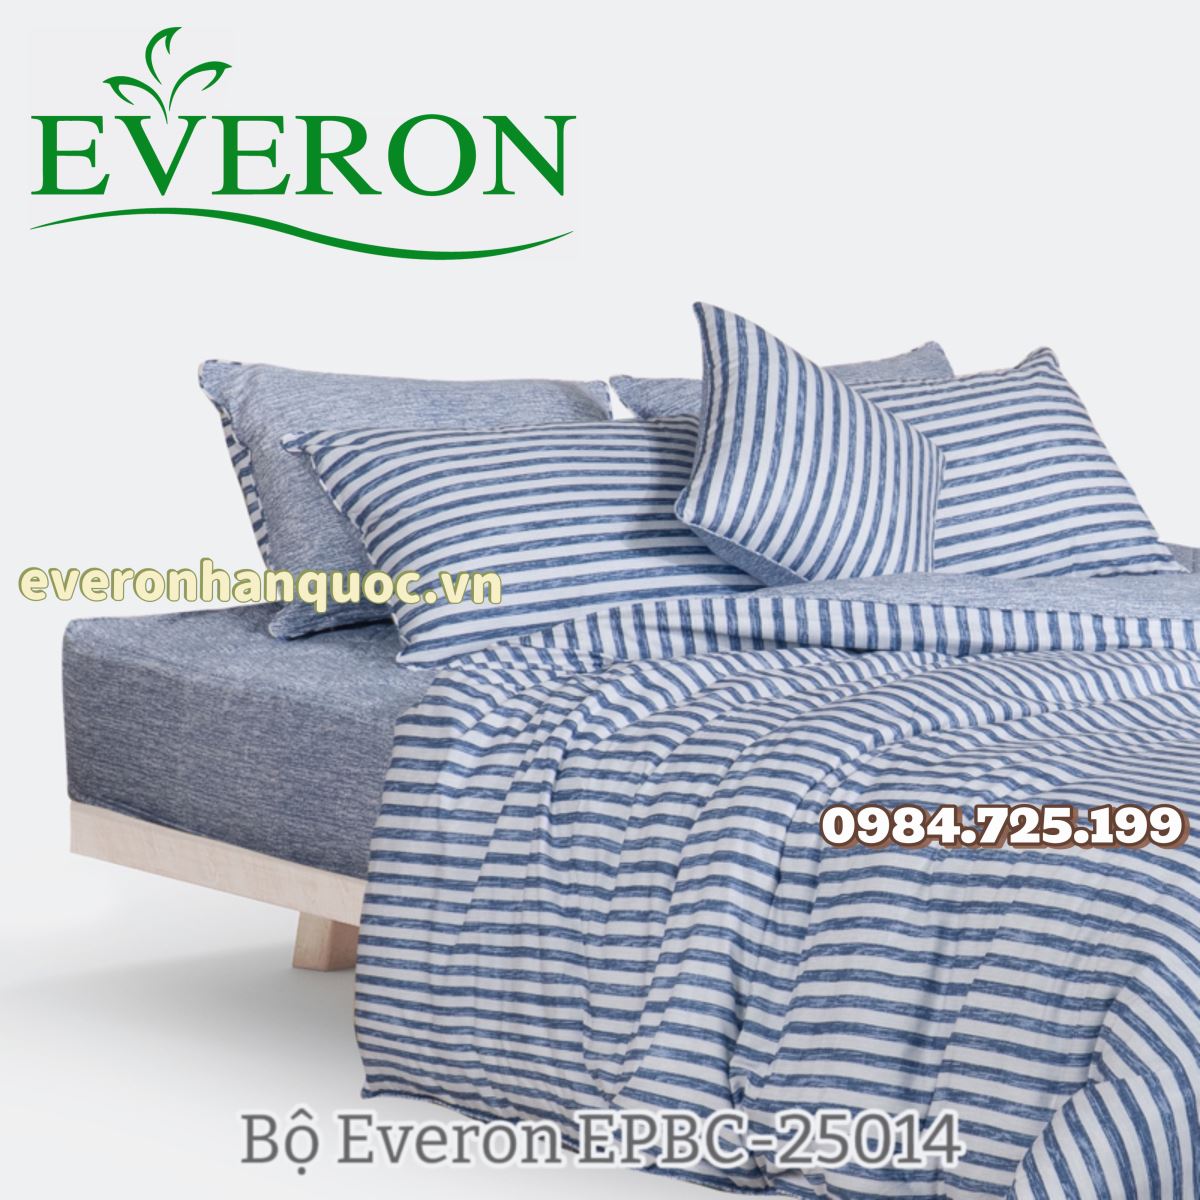 Bộ Everon EPBC-25014